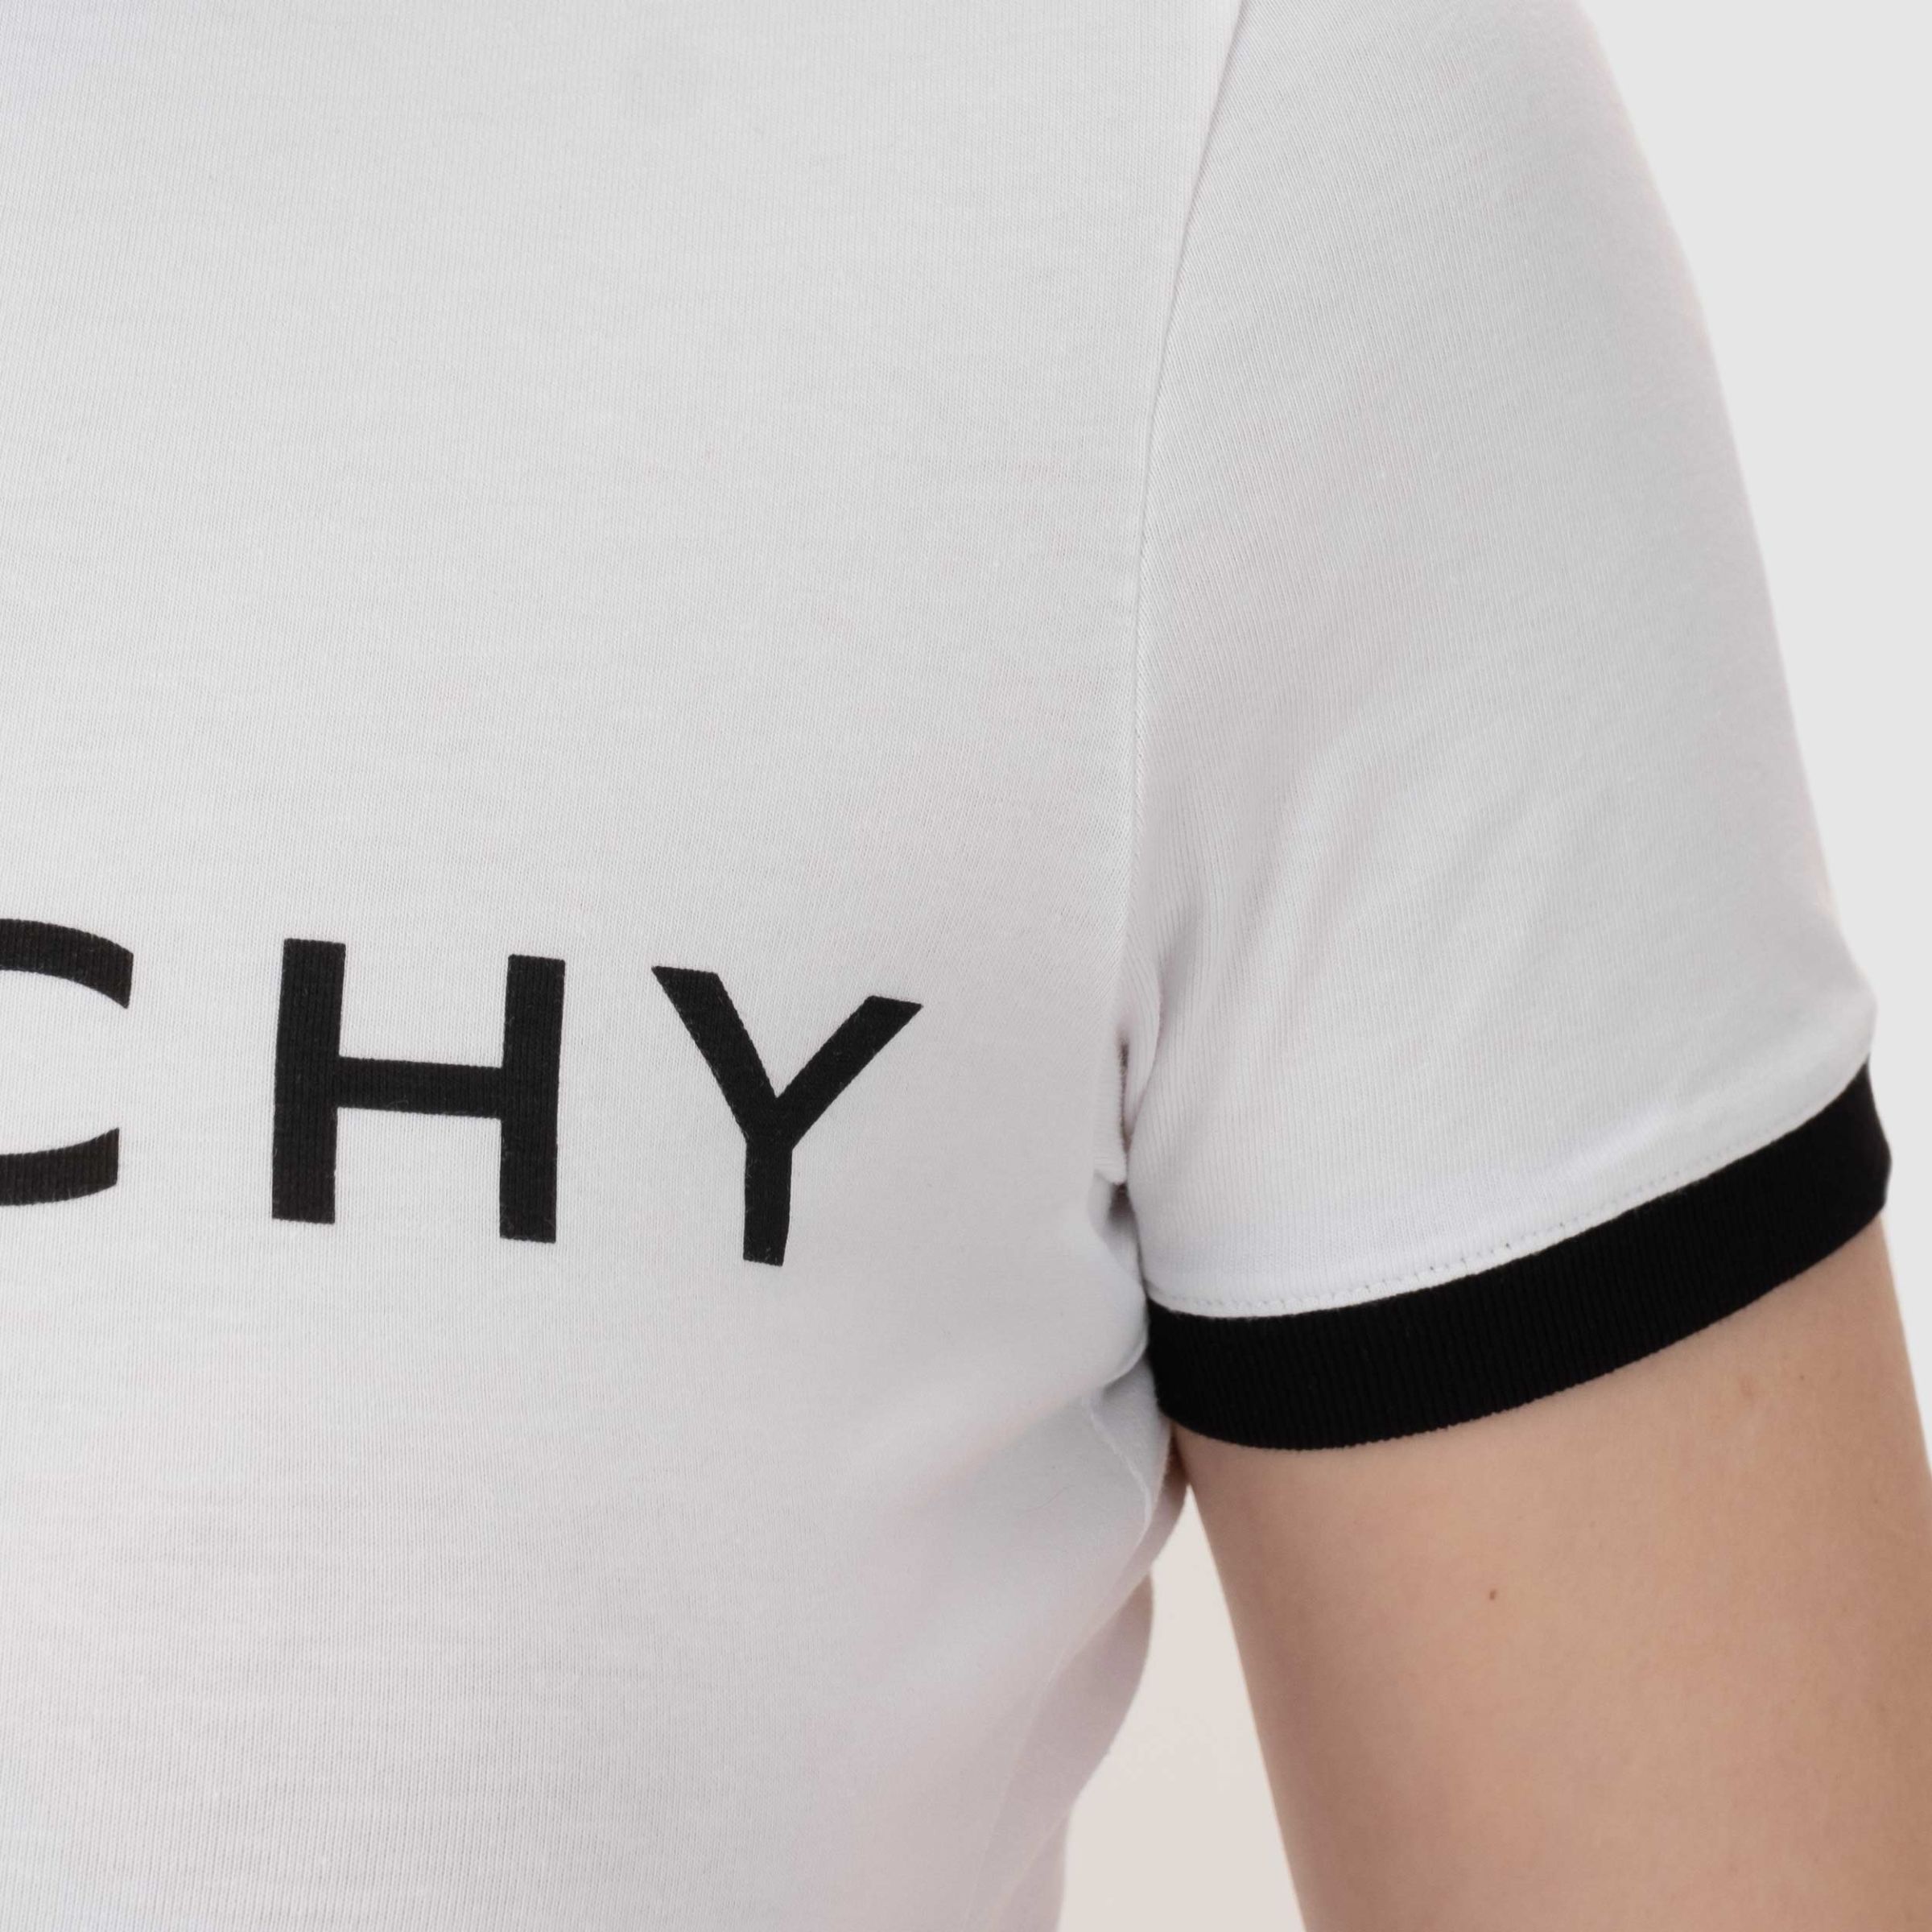 Футболка Givenchy бело-черная